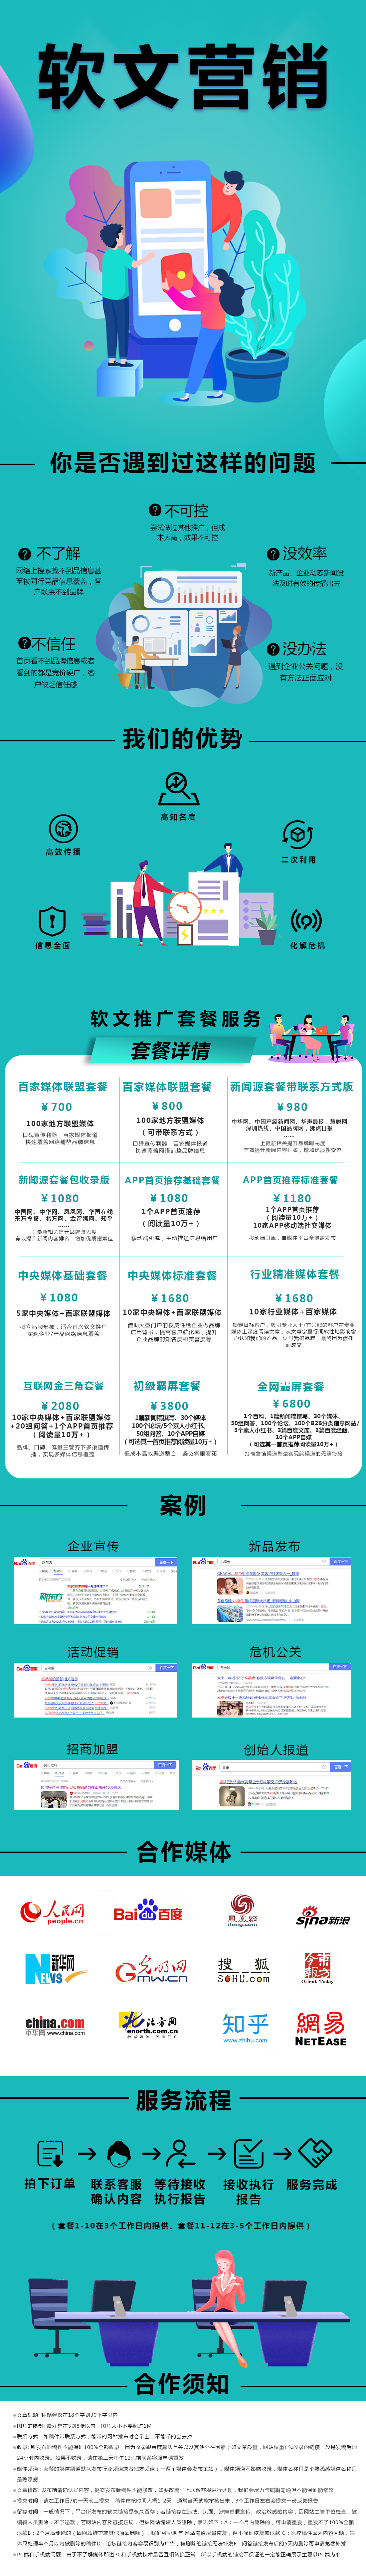 2020-12-8盈和动力&广州宝伦-软文服务.jpg